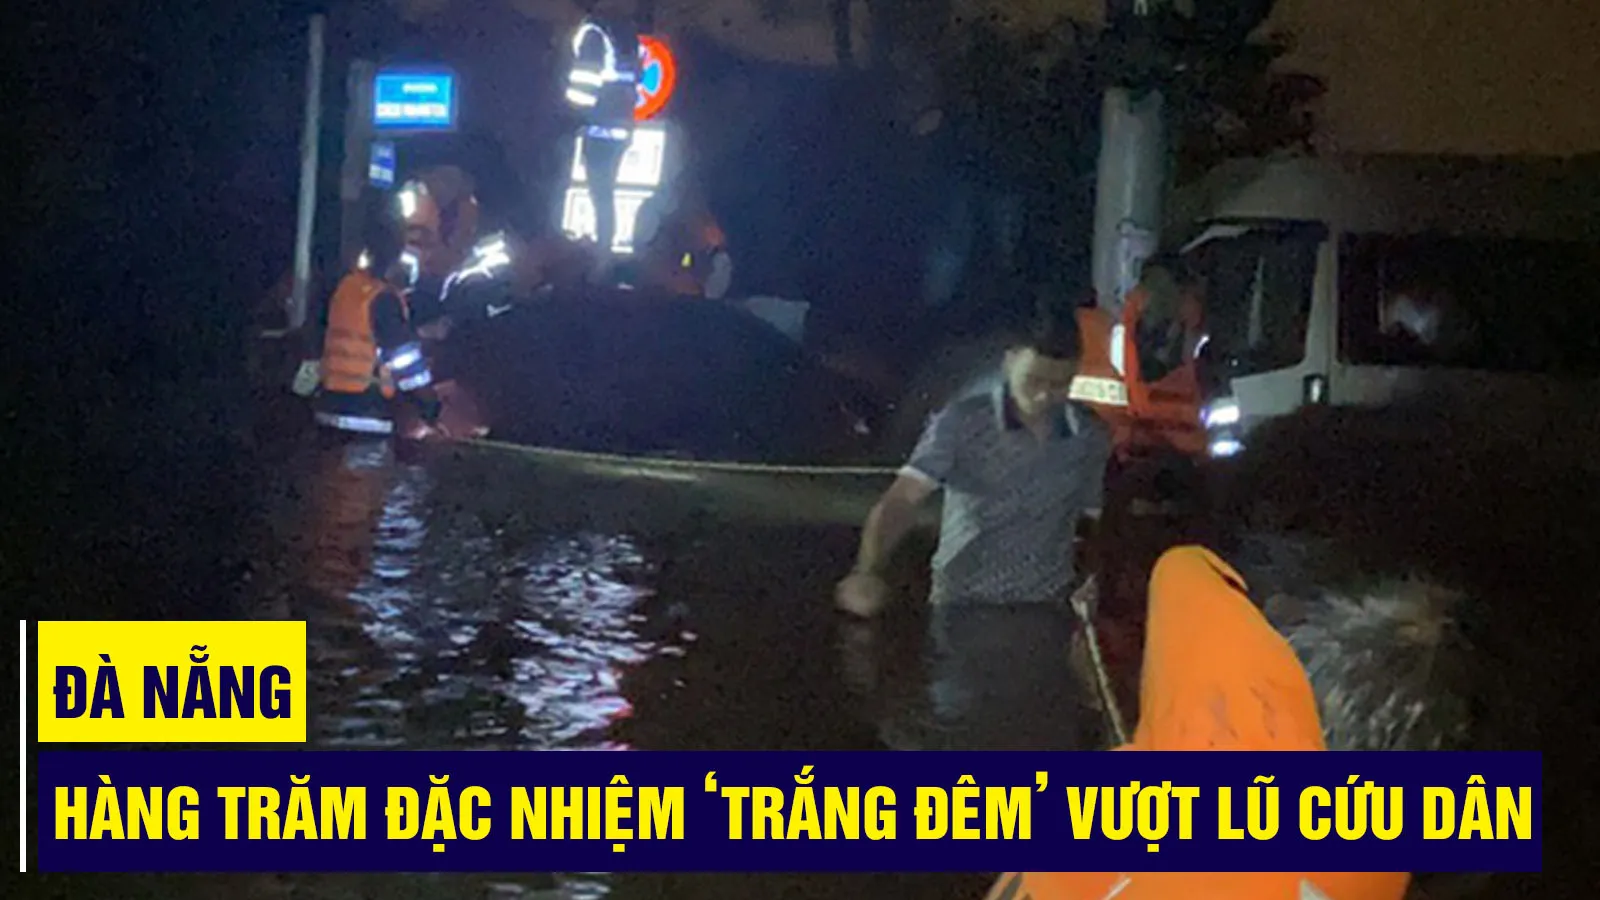 Đà Nẵng: Hàng trăm đặc nhiệm ‘trắng đêm’ dầm mình trong lũ dữ cứu dân khỏi vùng ngập lụt